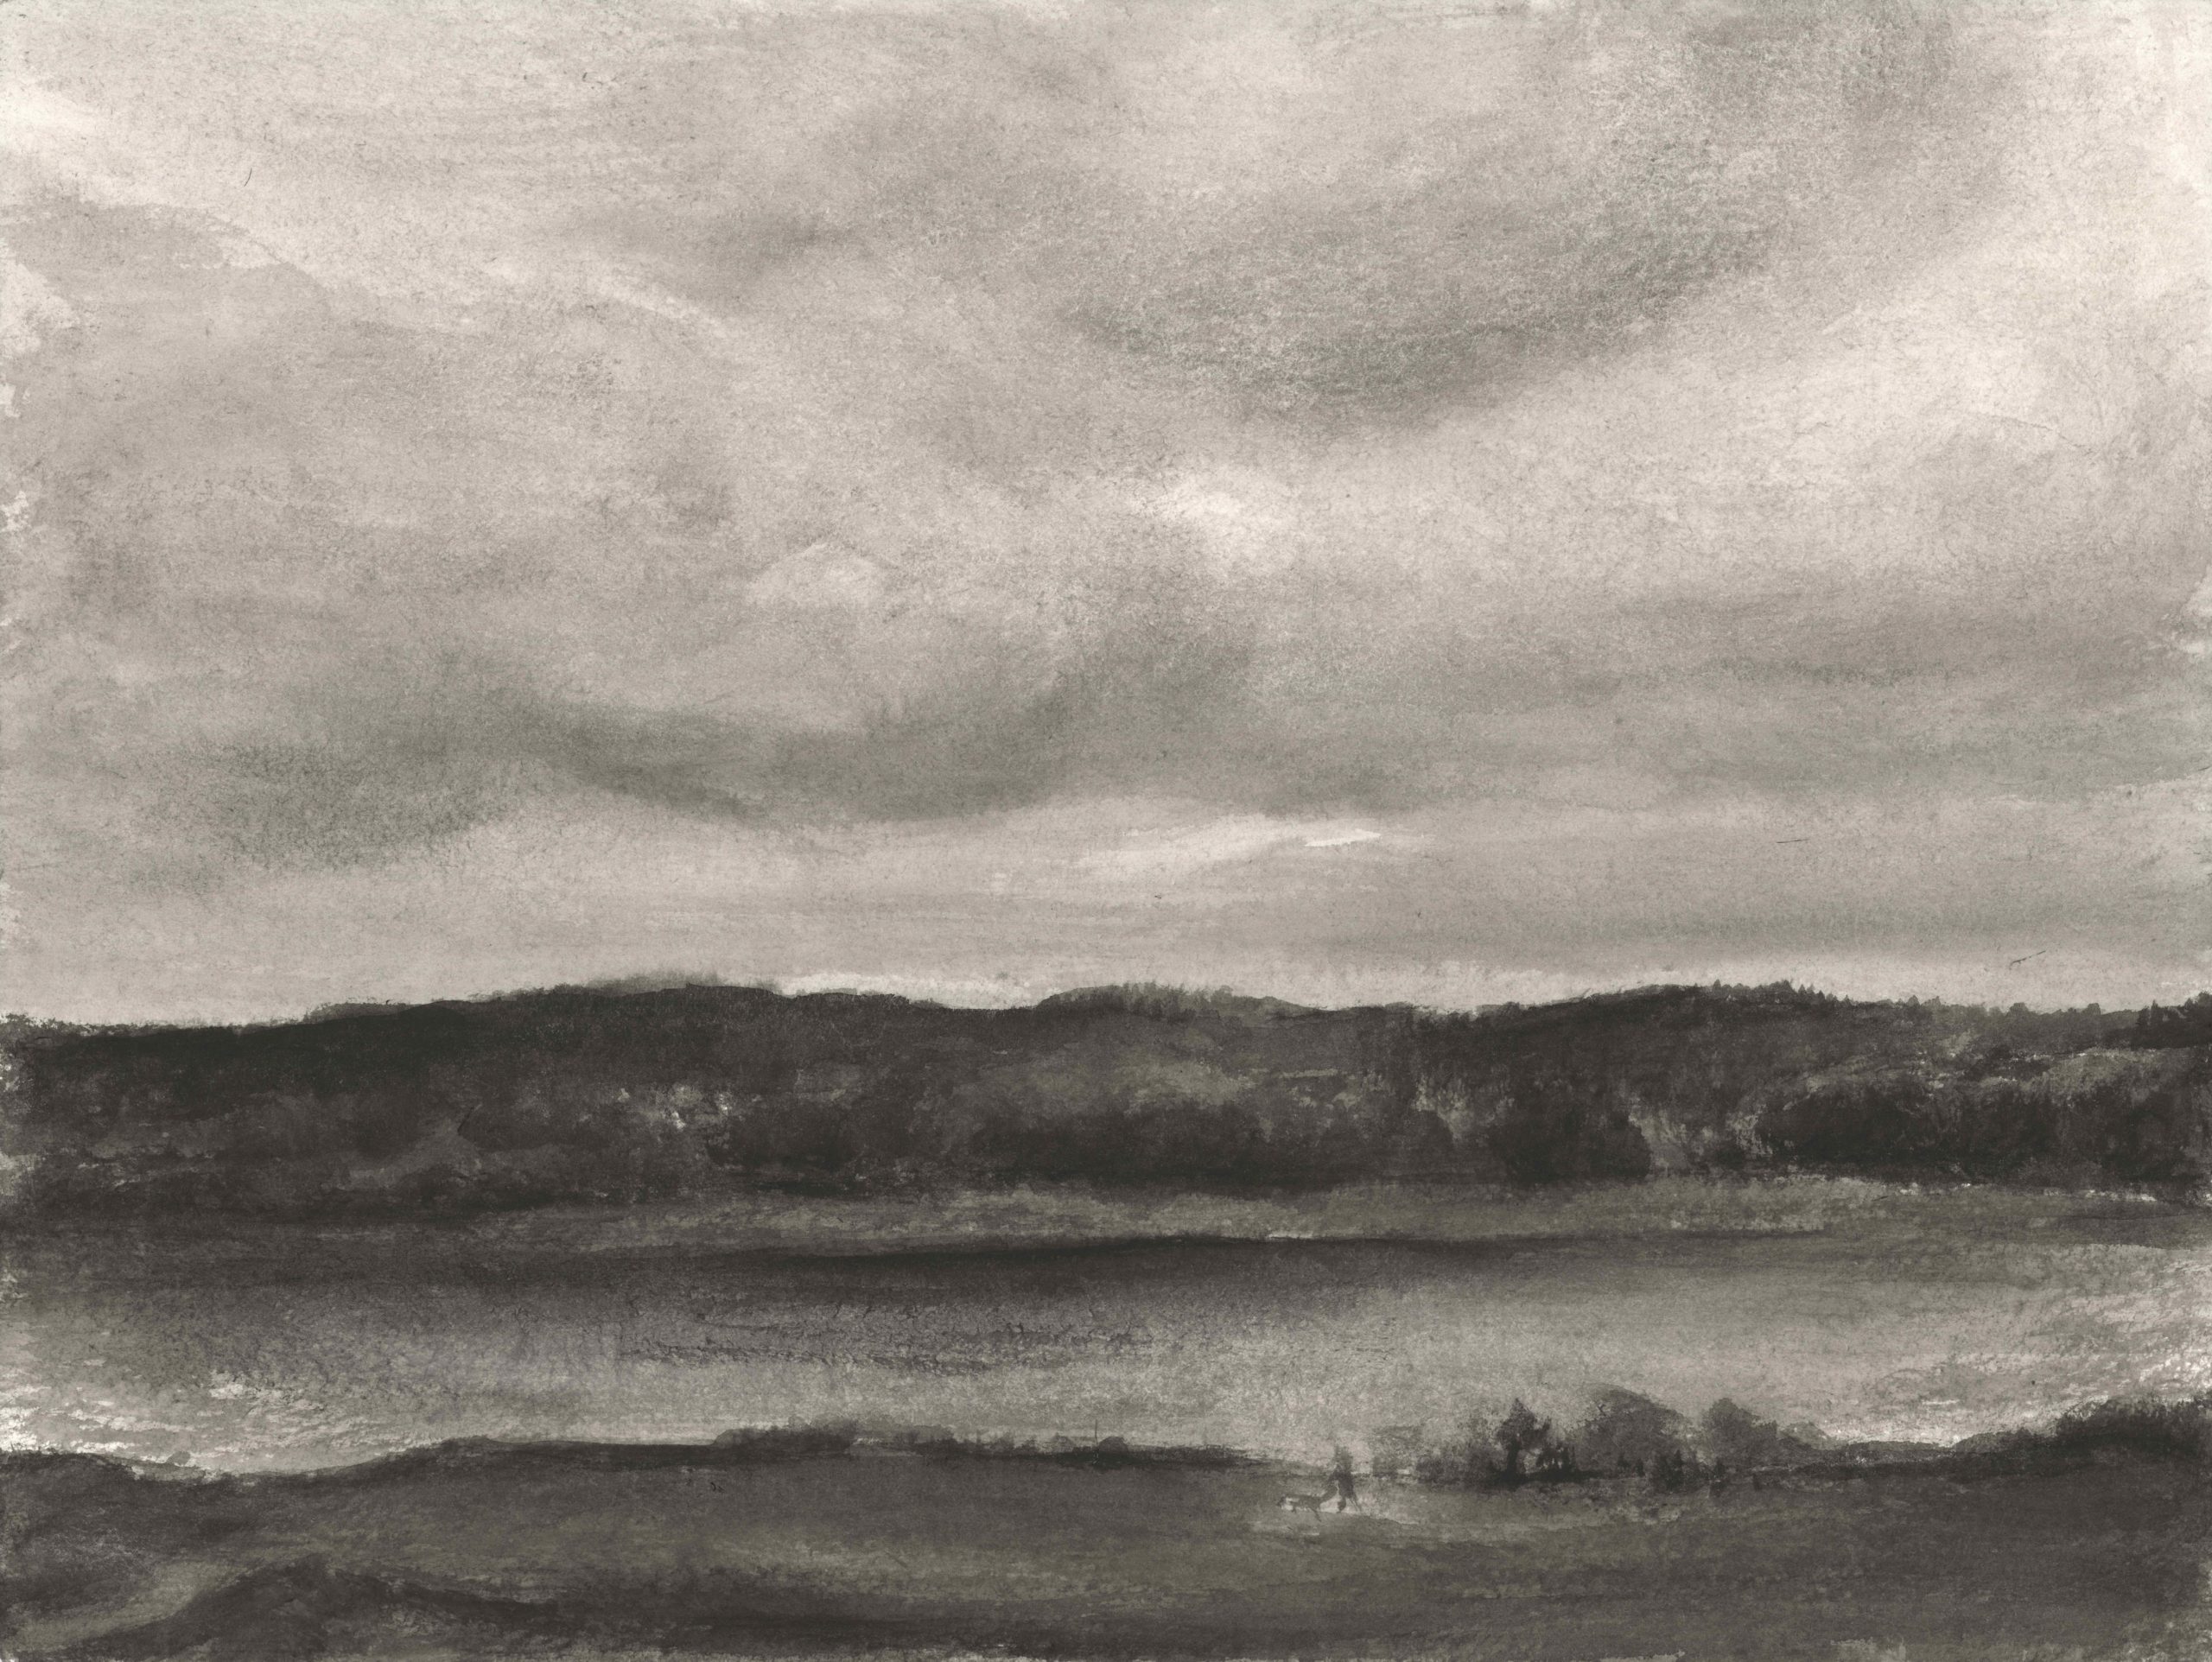 Narew River, 30x40cm, ink, paper, 2017